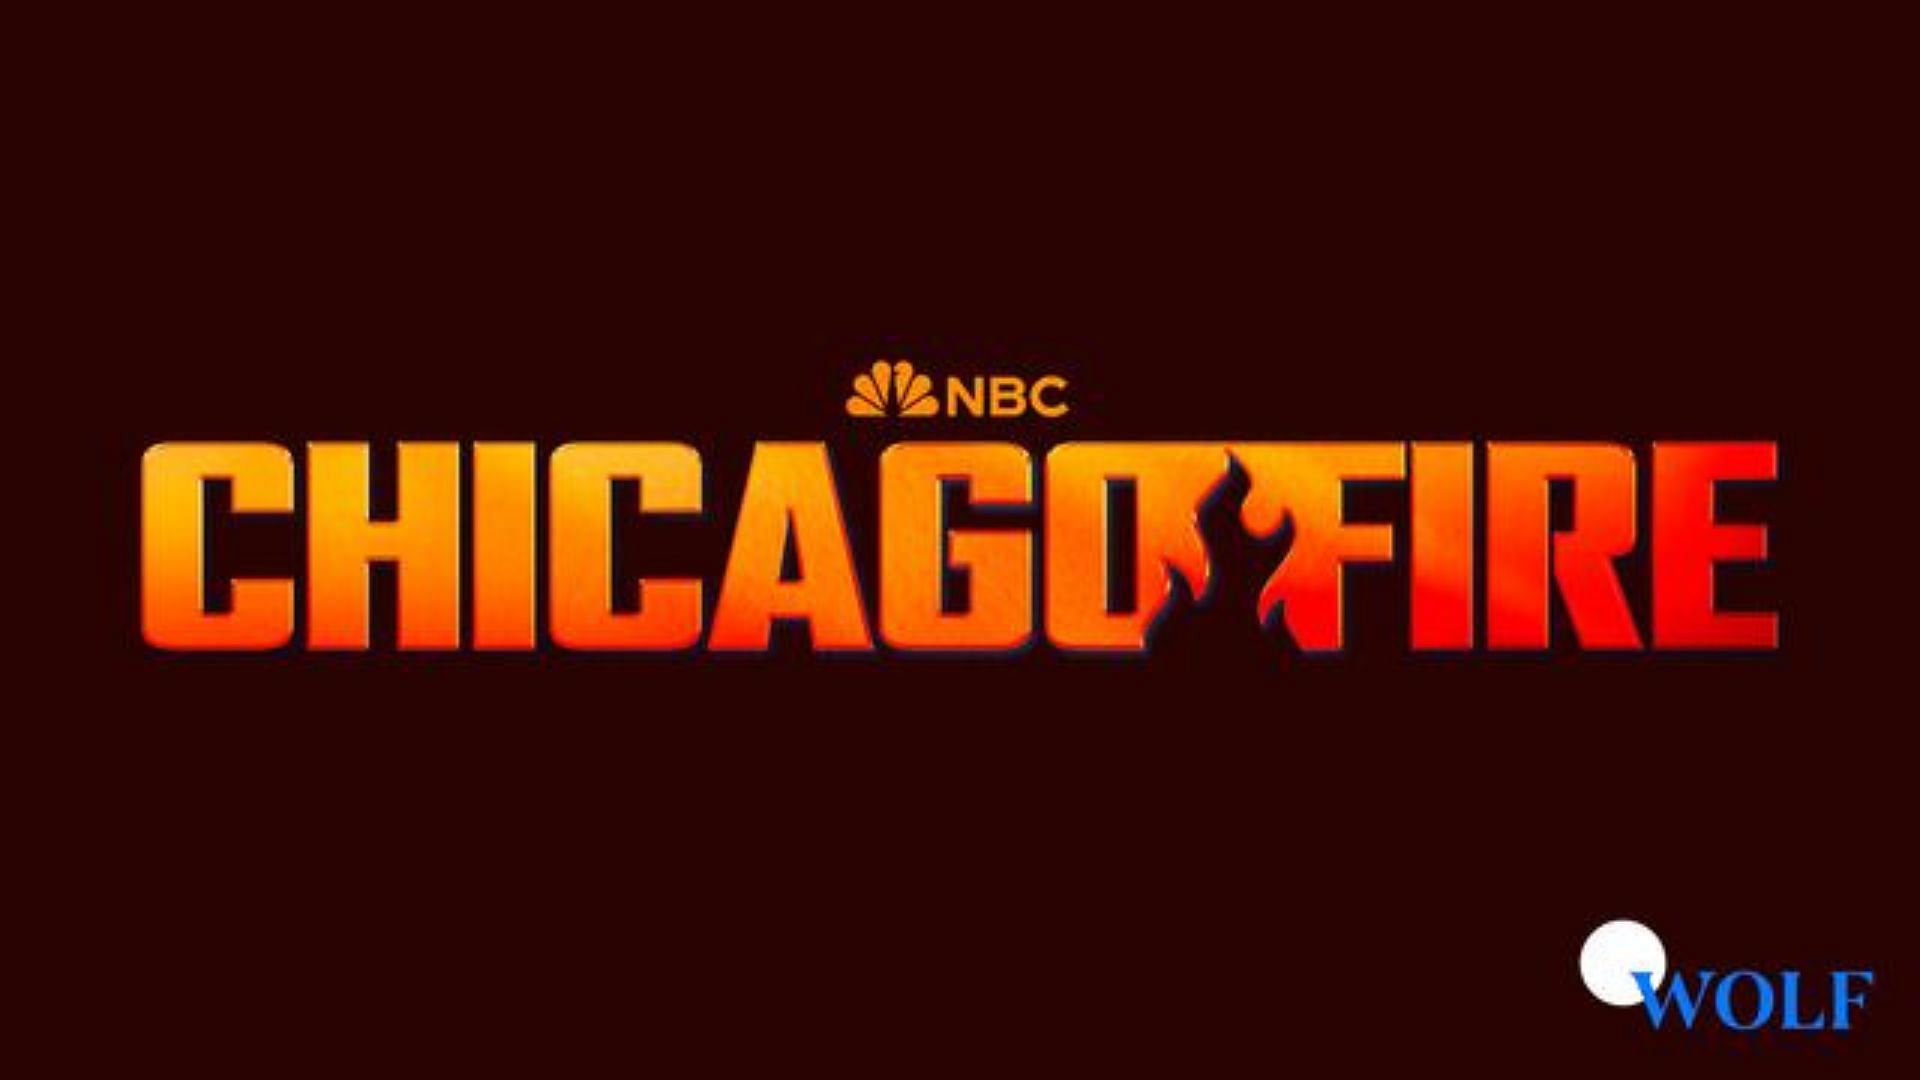 Chicago Fire 2012 (Image via NBC)